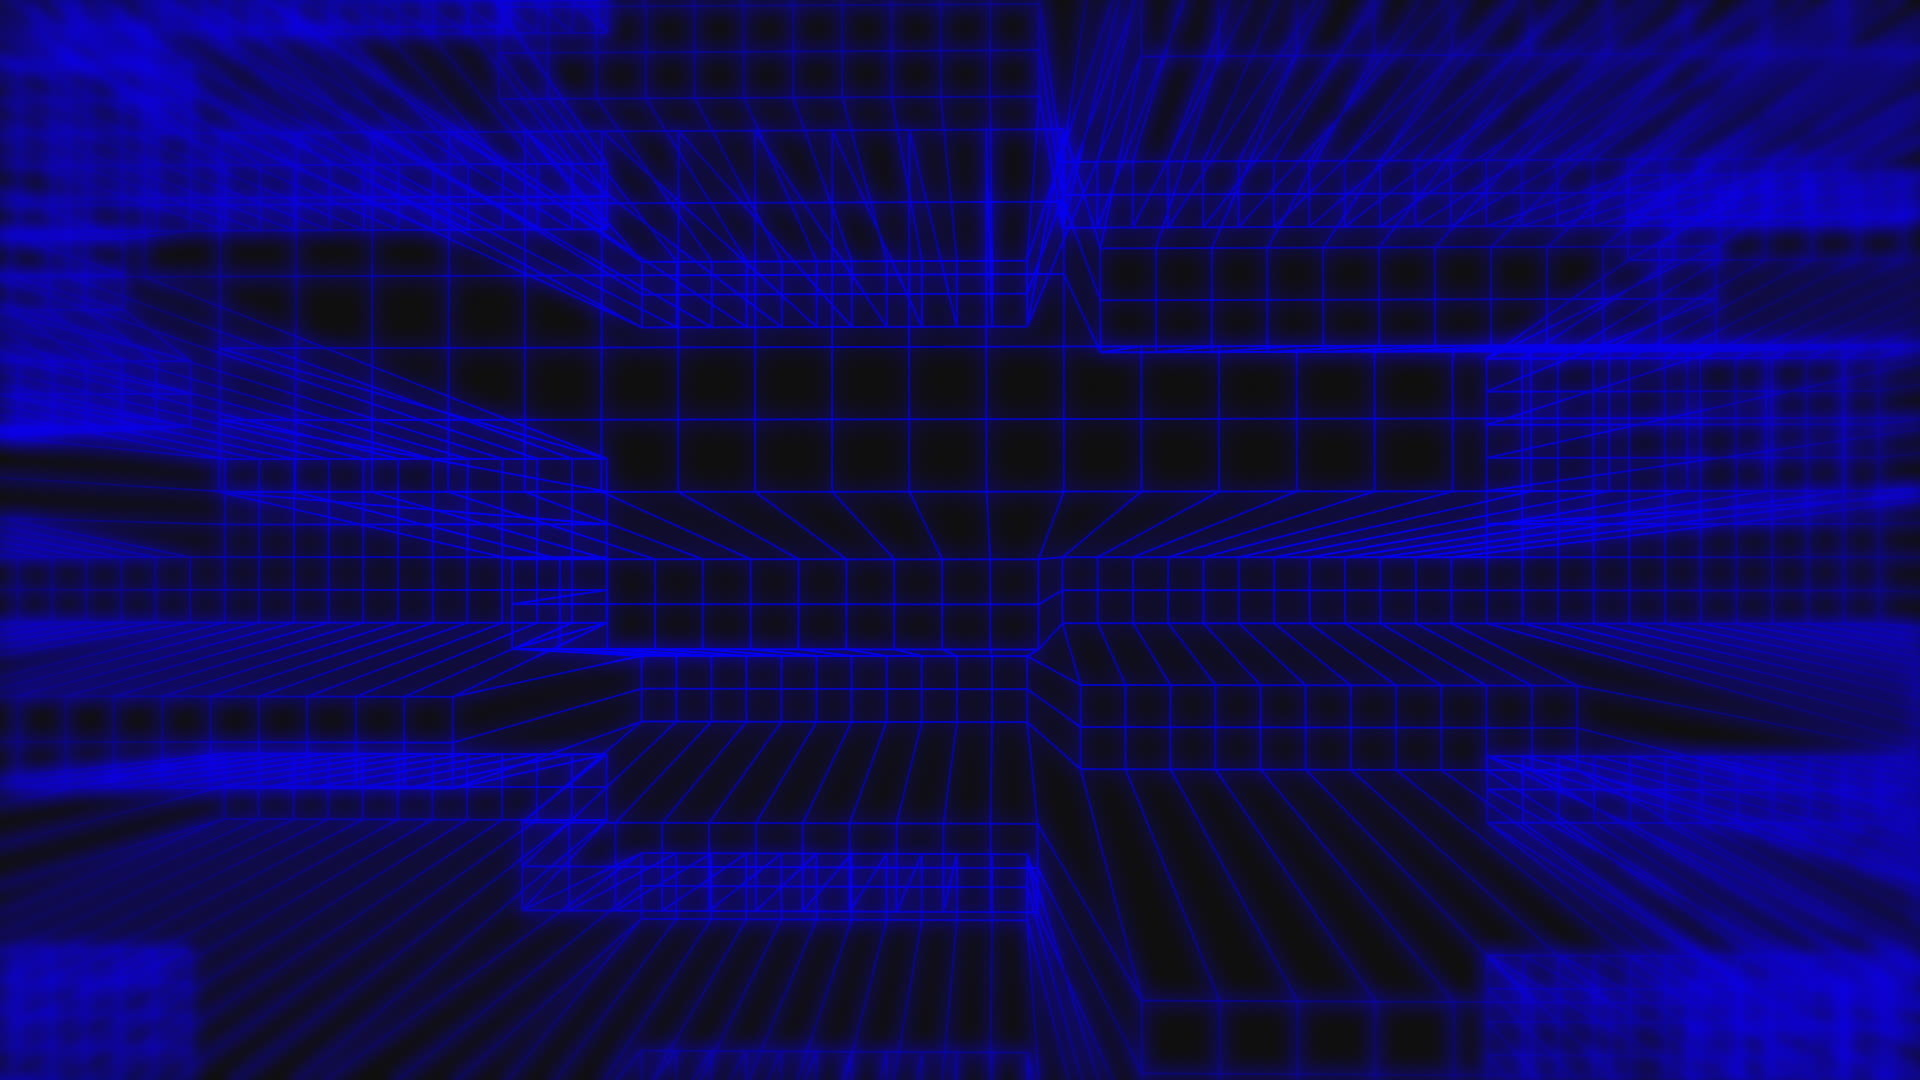 Blue grid animation: Cùng đắm mình vào không gian ảo tuyệt đẹp với blue grid animation. Tựa như muôn màu xanh trong những đường lưới kết hợp với những chuyển động tuyệt vời tạo nên sự hài hoà tuyệt đối. Mời bạn thưởng ngoạn, tận hưởng một thế giới mới lạ từ blue grid animation.